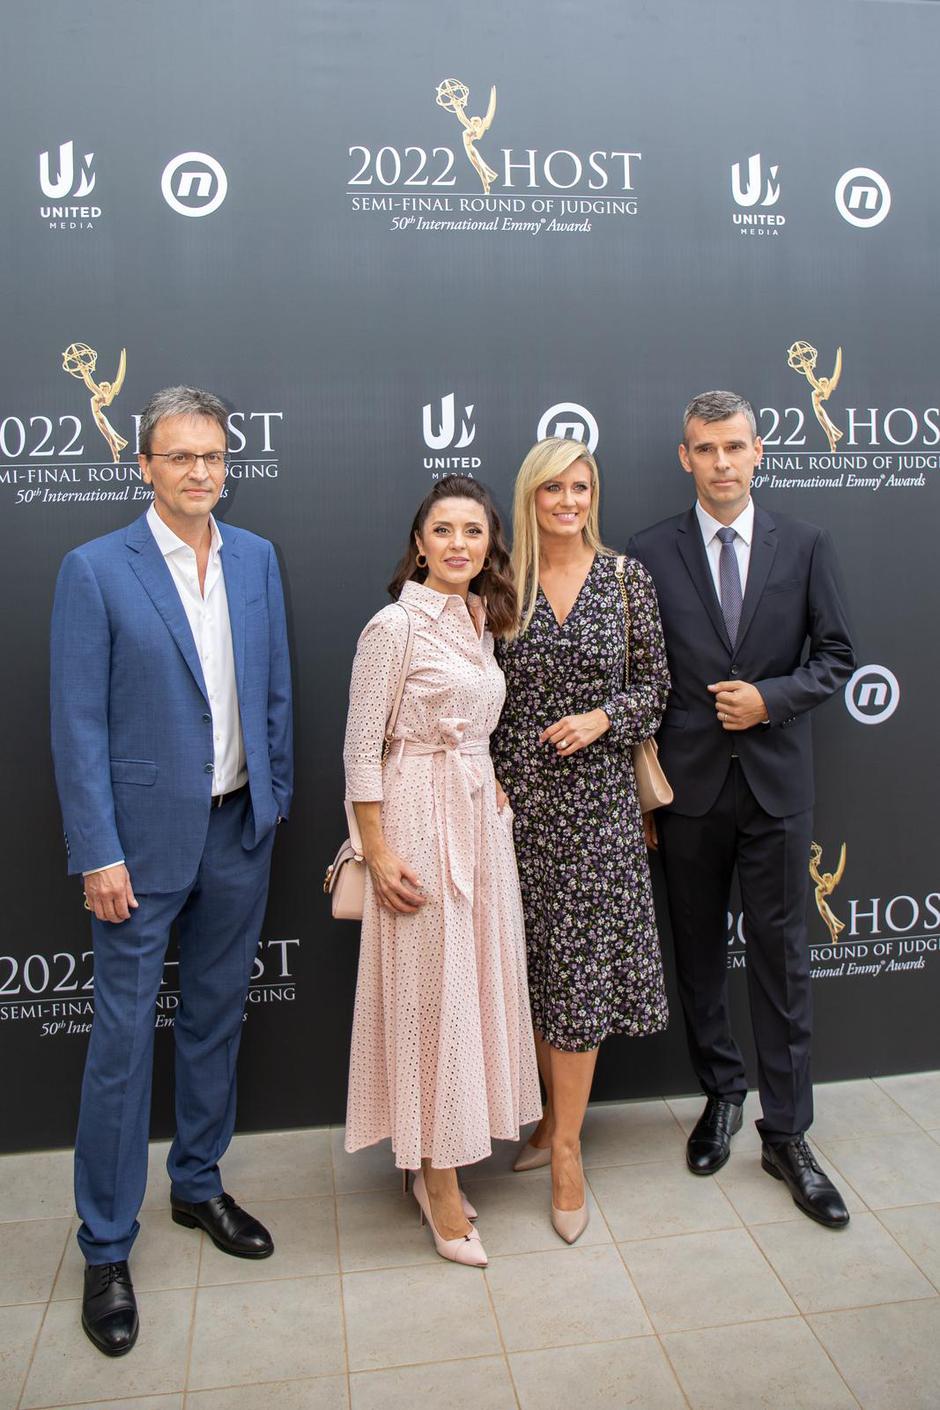 Polufinale Emmy u Dubrovniku za kategoriju telenovele